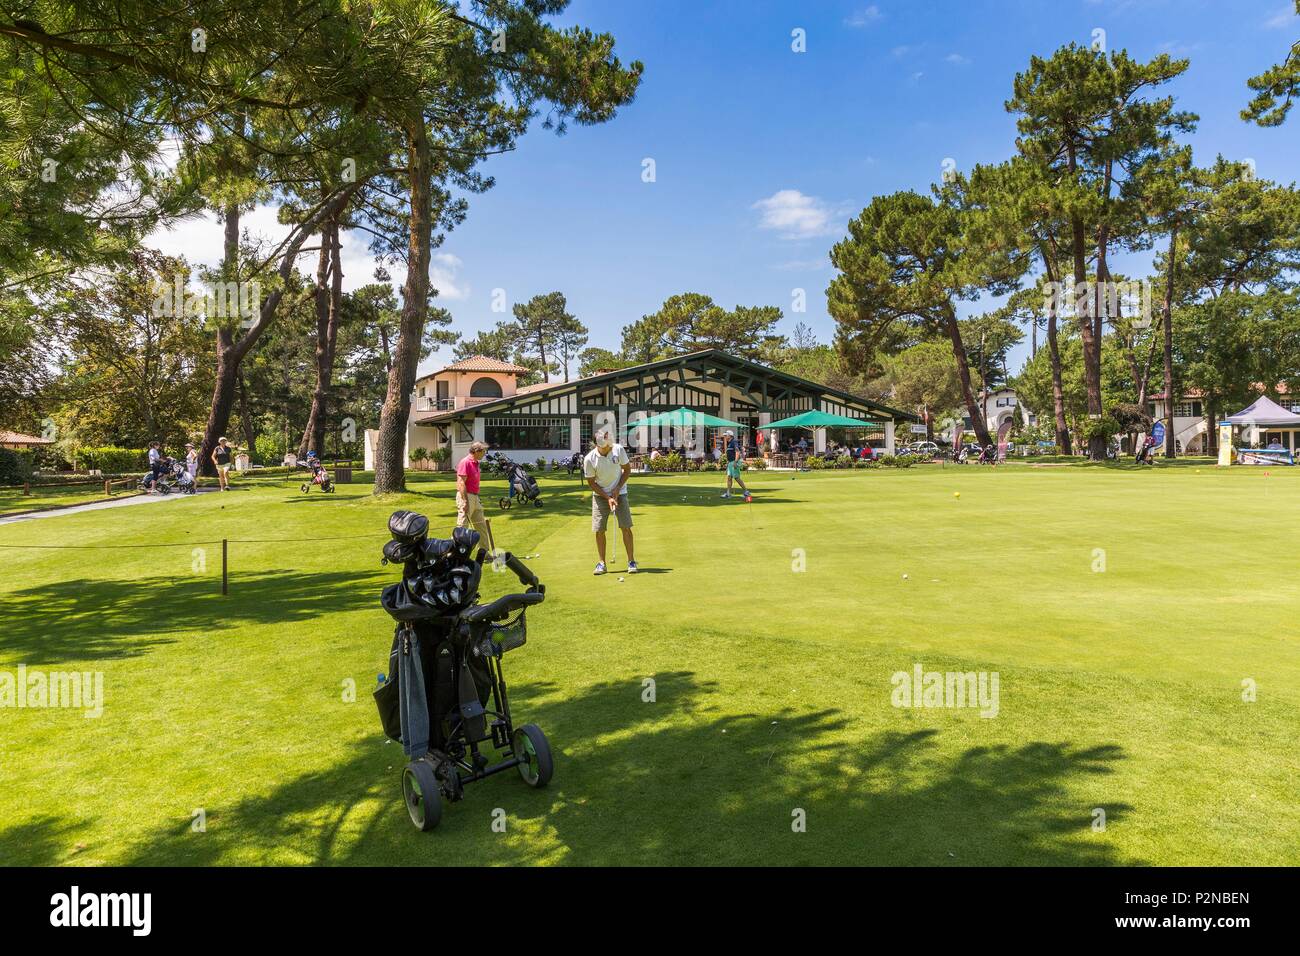 Francia, landas, Hossegor, jugadores de golf en el curso de la ciudad Foto de stock